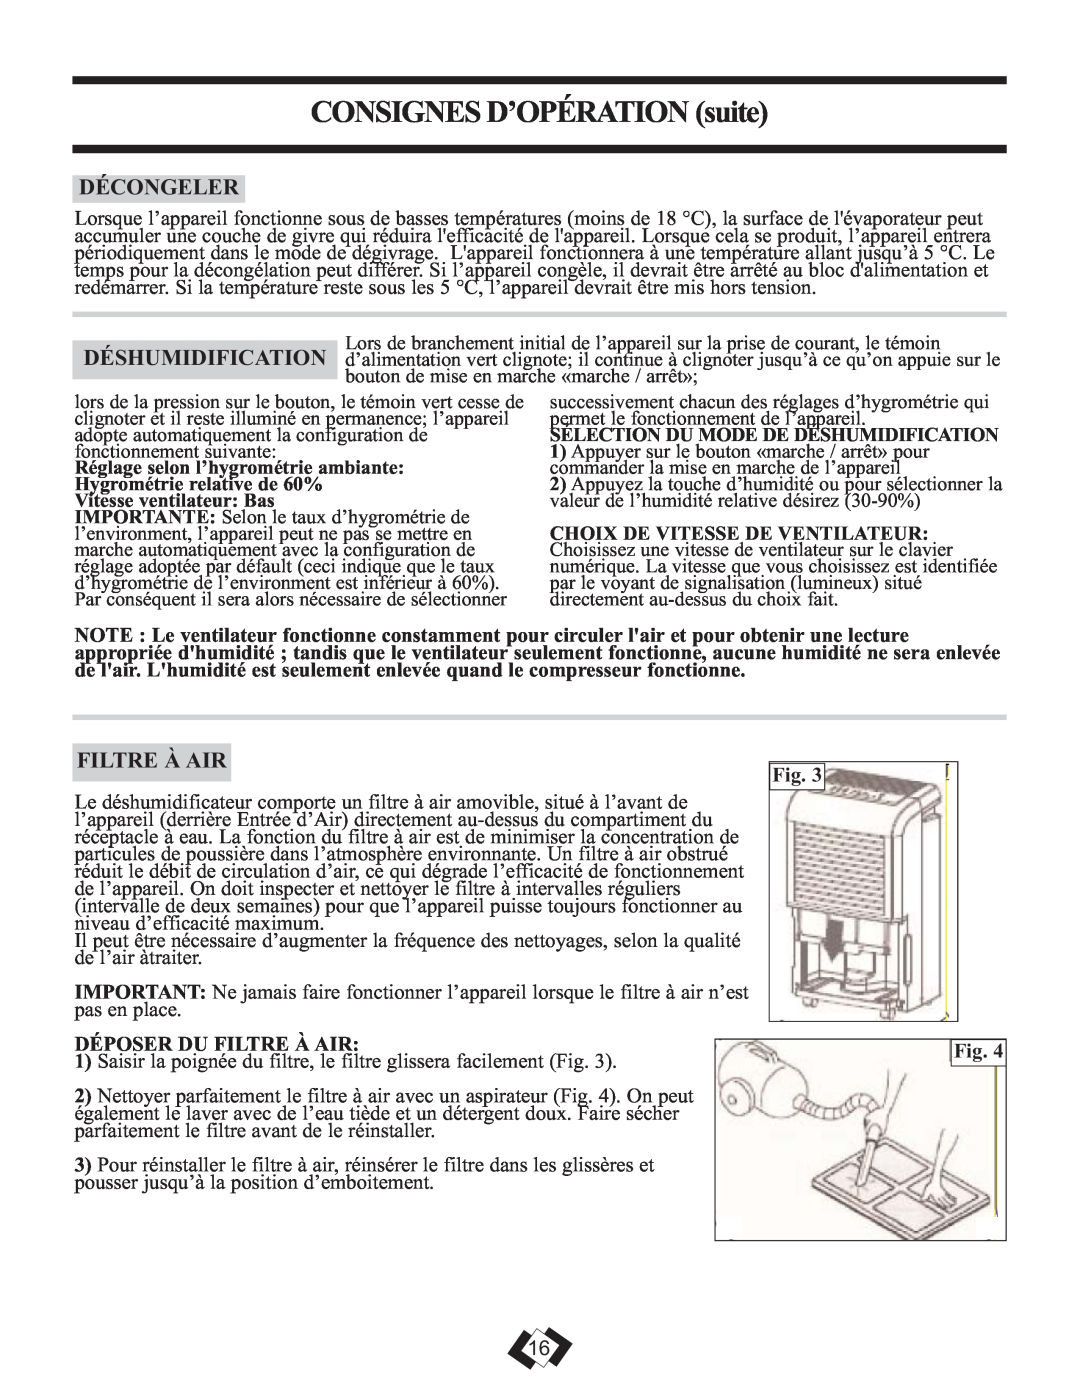 Danby 7009REE, 6009REE operating instructions Décongeler, Déposer Du Filtre À Air, CONSIGNESD’OPÉRATION suite 